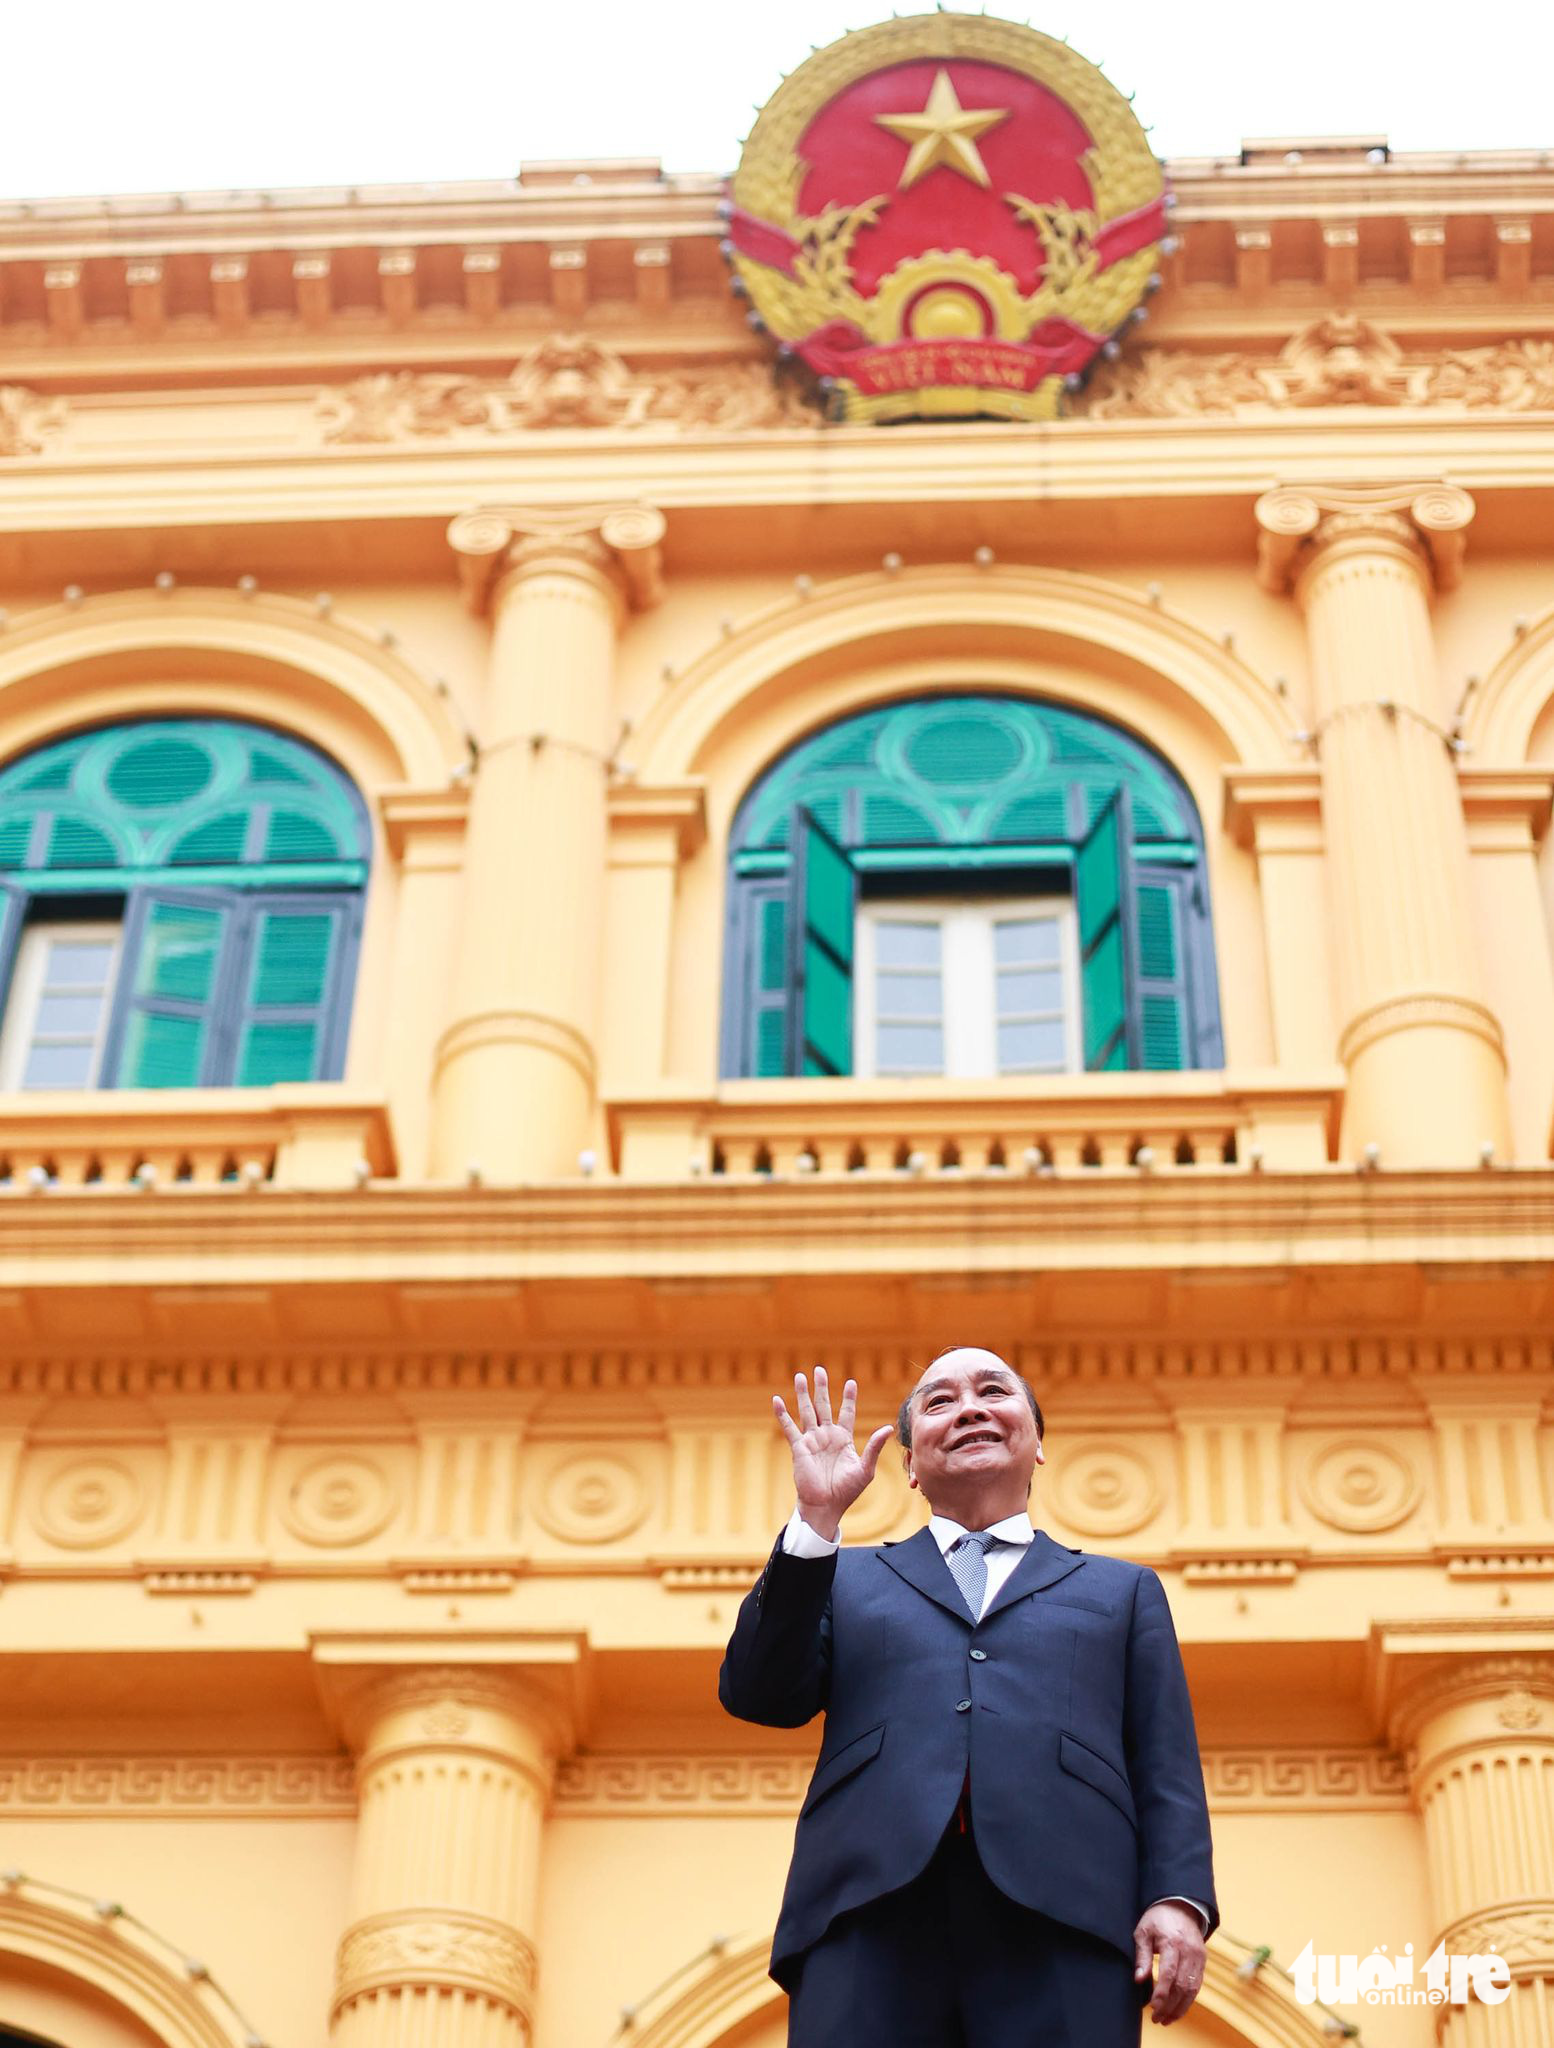 Nguyên Chủ tịch nước Nguyễn Xuân Phúc vẫy chào tạm biệt các cán bộ tại văn phòng Chủ tịch nước sau khi buổi lễ bàn giao công tác kết thúc - Ảnh: NGUYỄN KHÁNH/Tuổi Trẻ